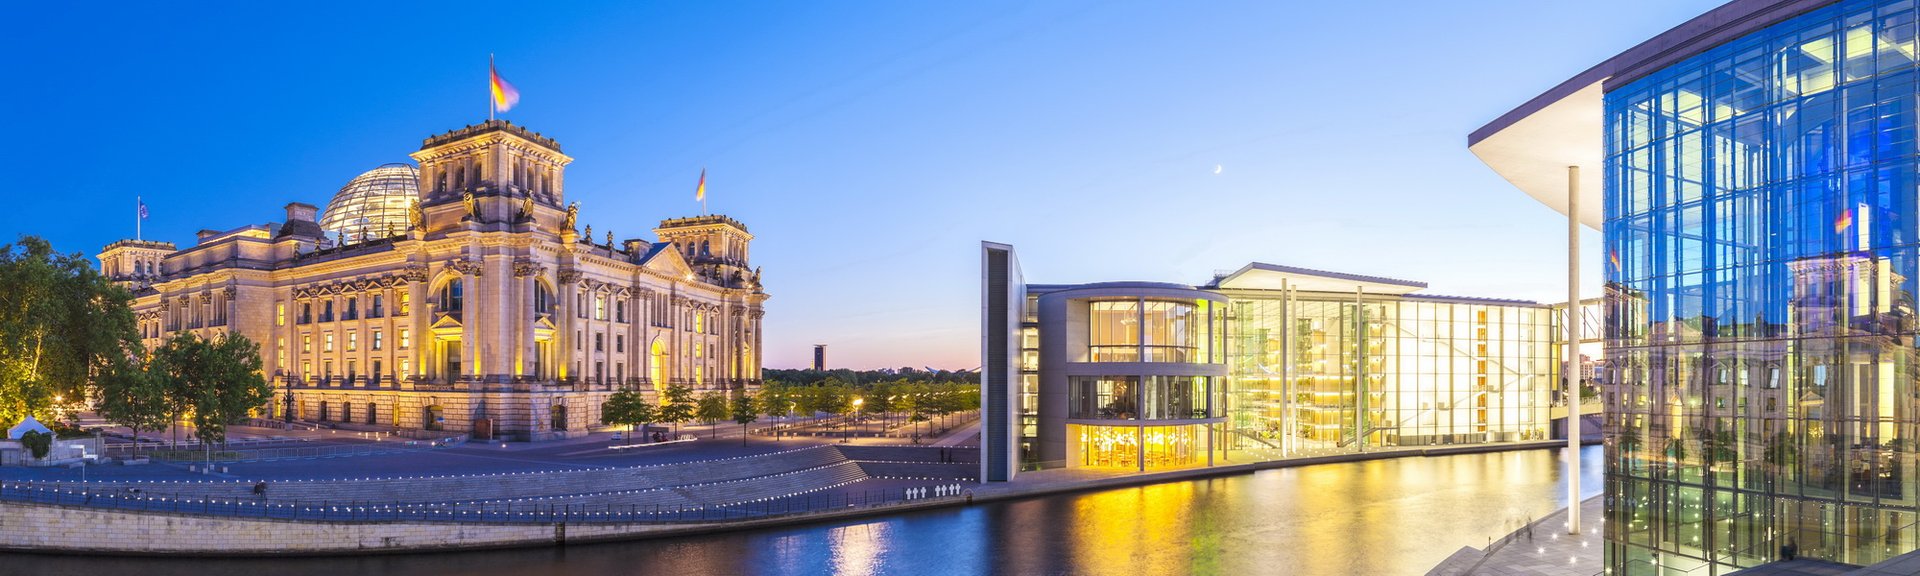 Berlin im Detail – Berlin-Mitte im Überblick